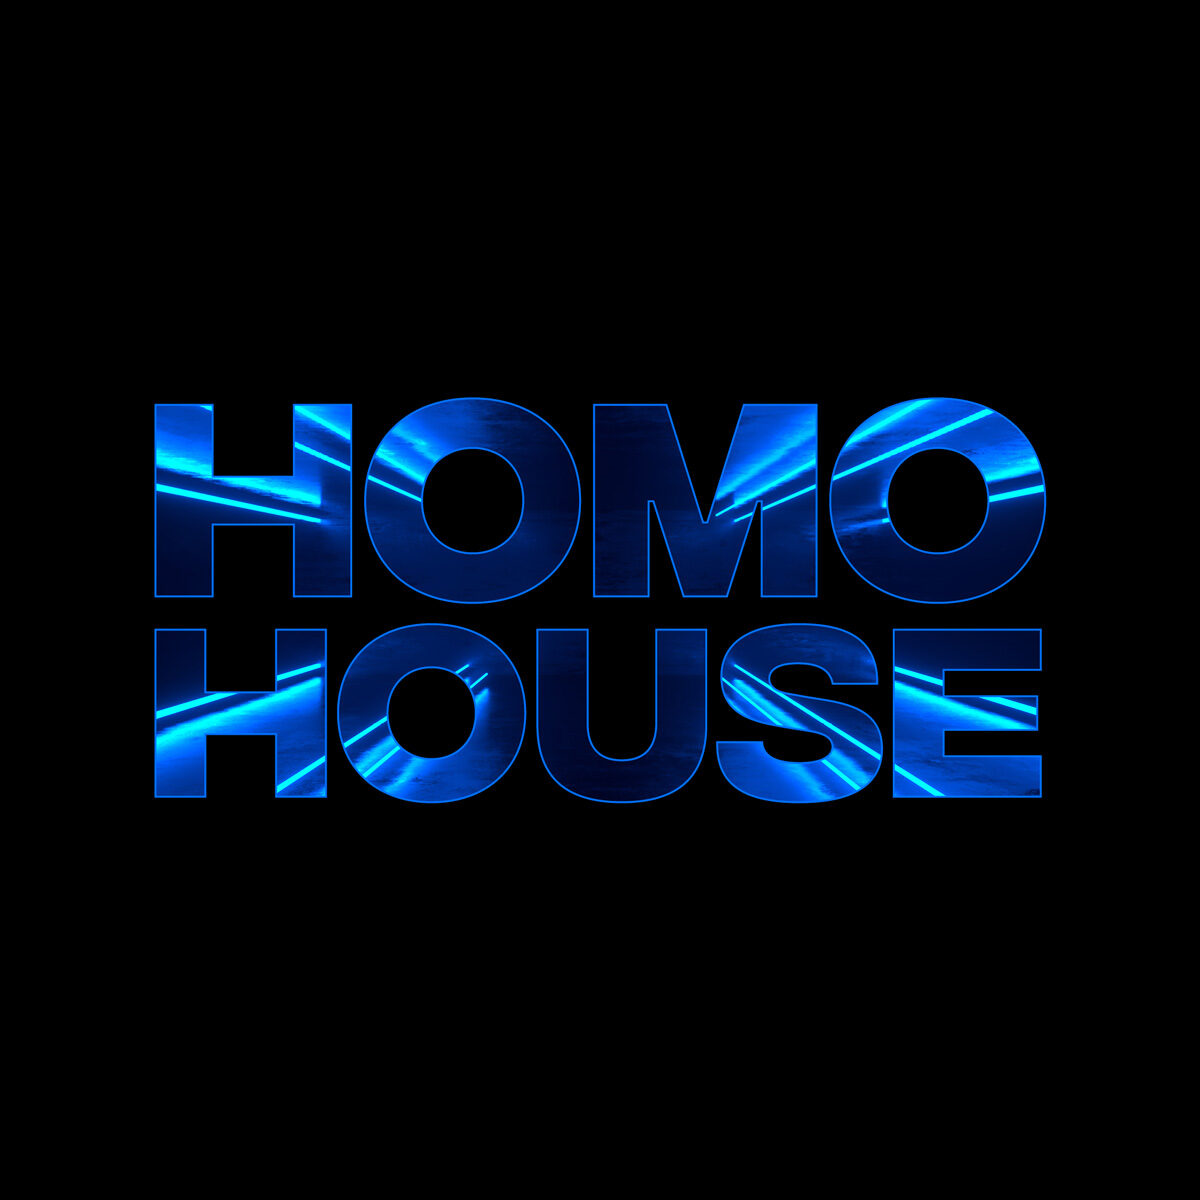 Homo House